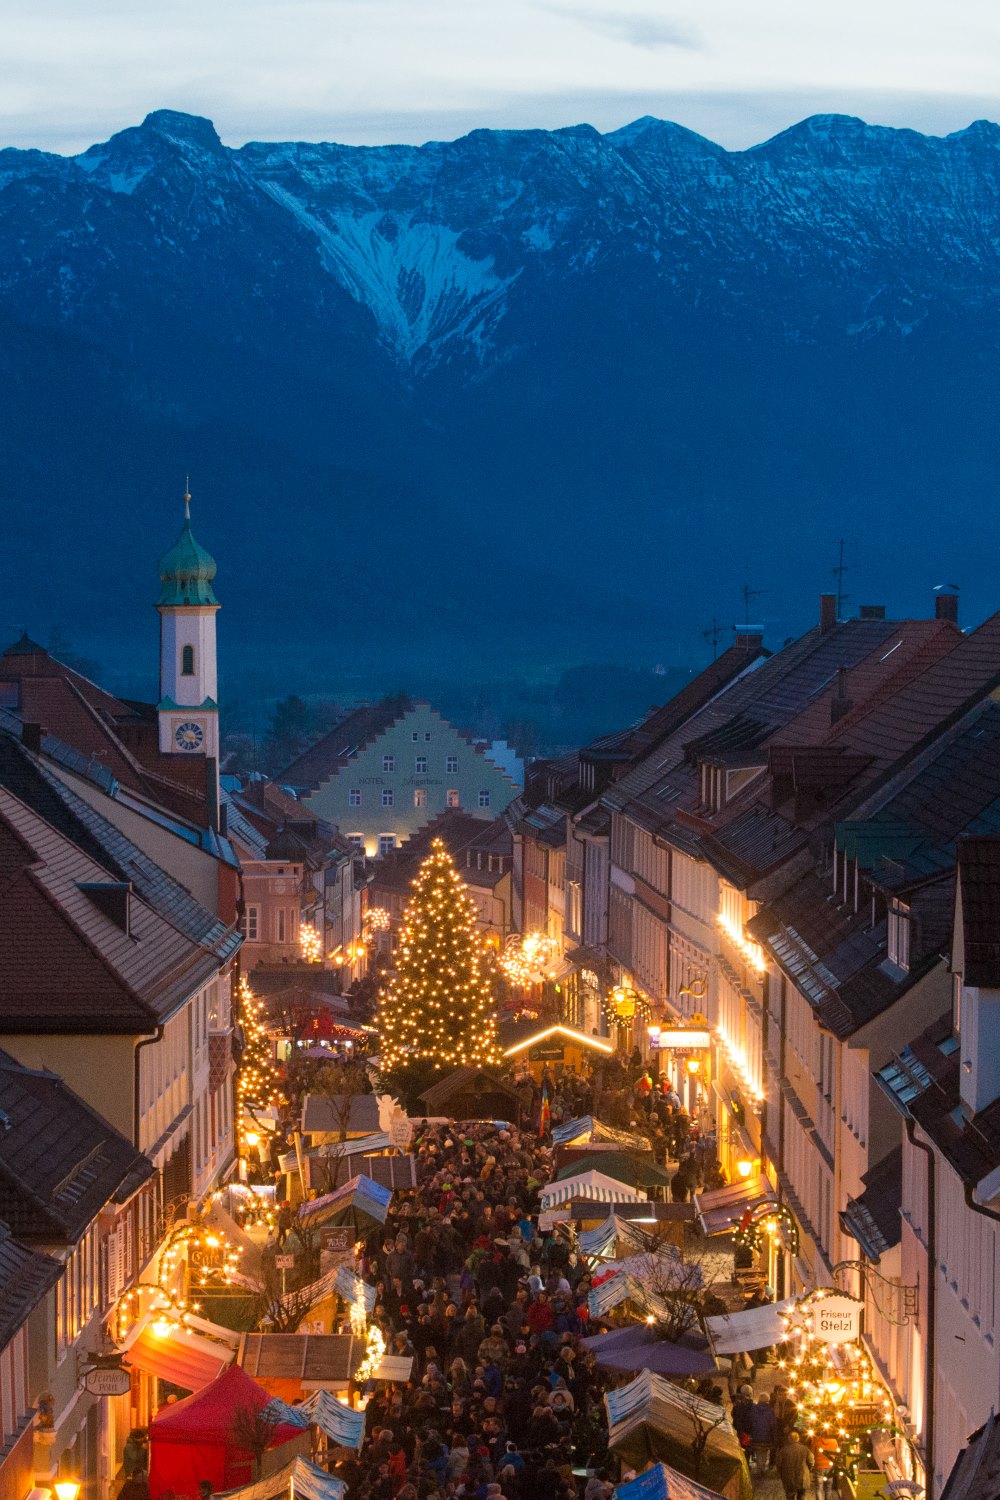 Der Christkindlmarkt in Murnau mit dem schönen Bergpanorama, C. Kolb